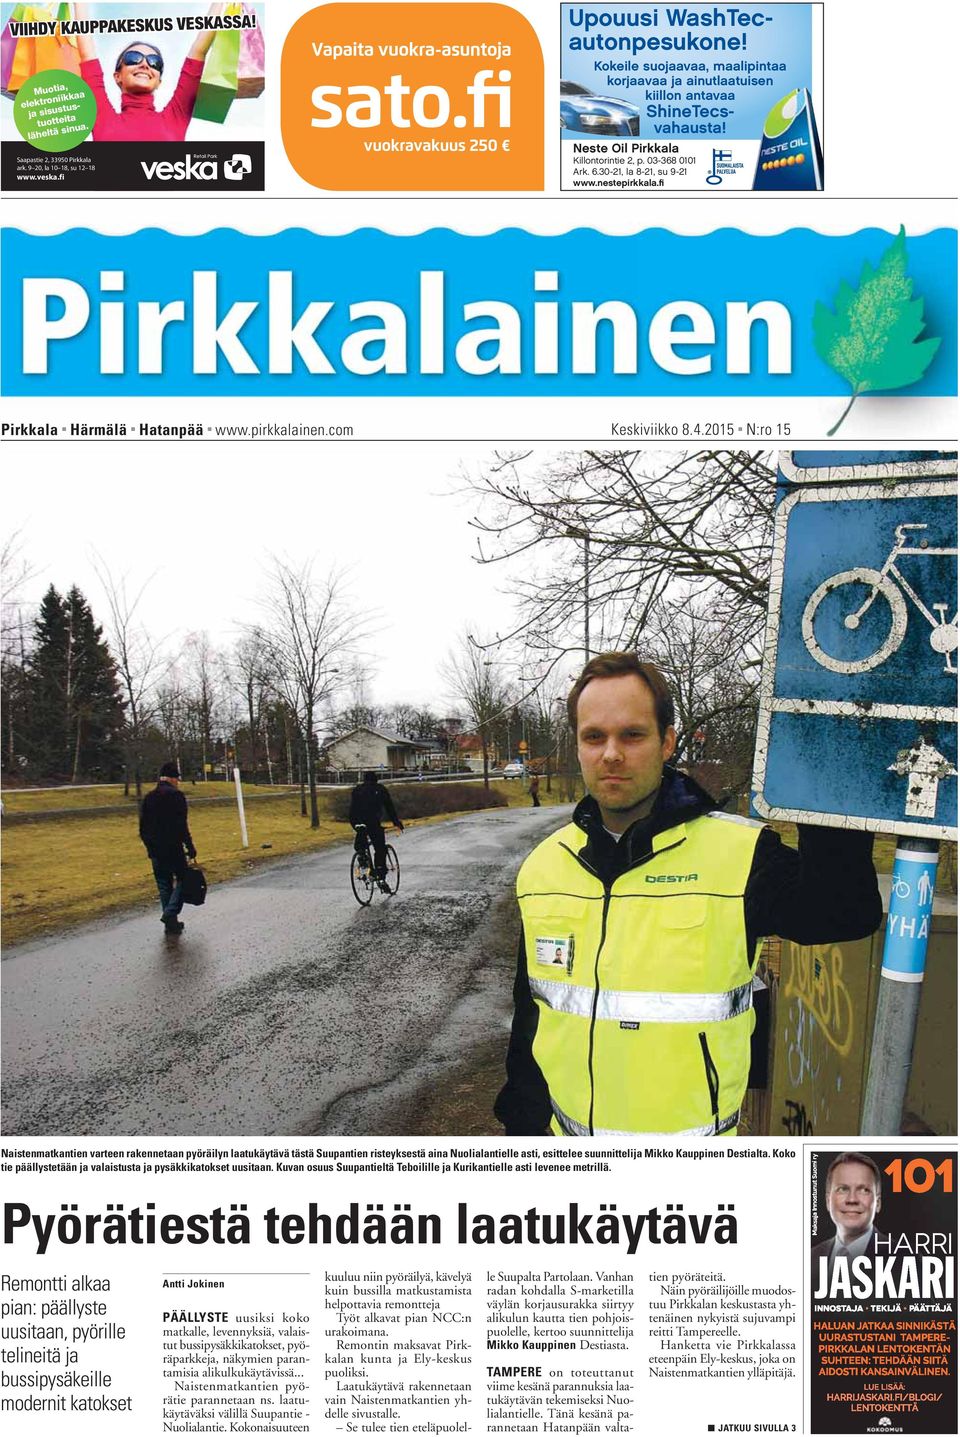 fi Pirkkala Härmälä Hatanpää www.pirkkalainen.com Keskiviikko 8.4.